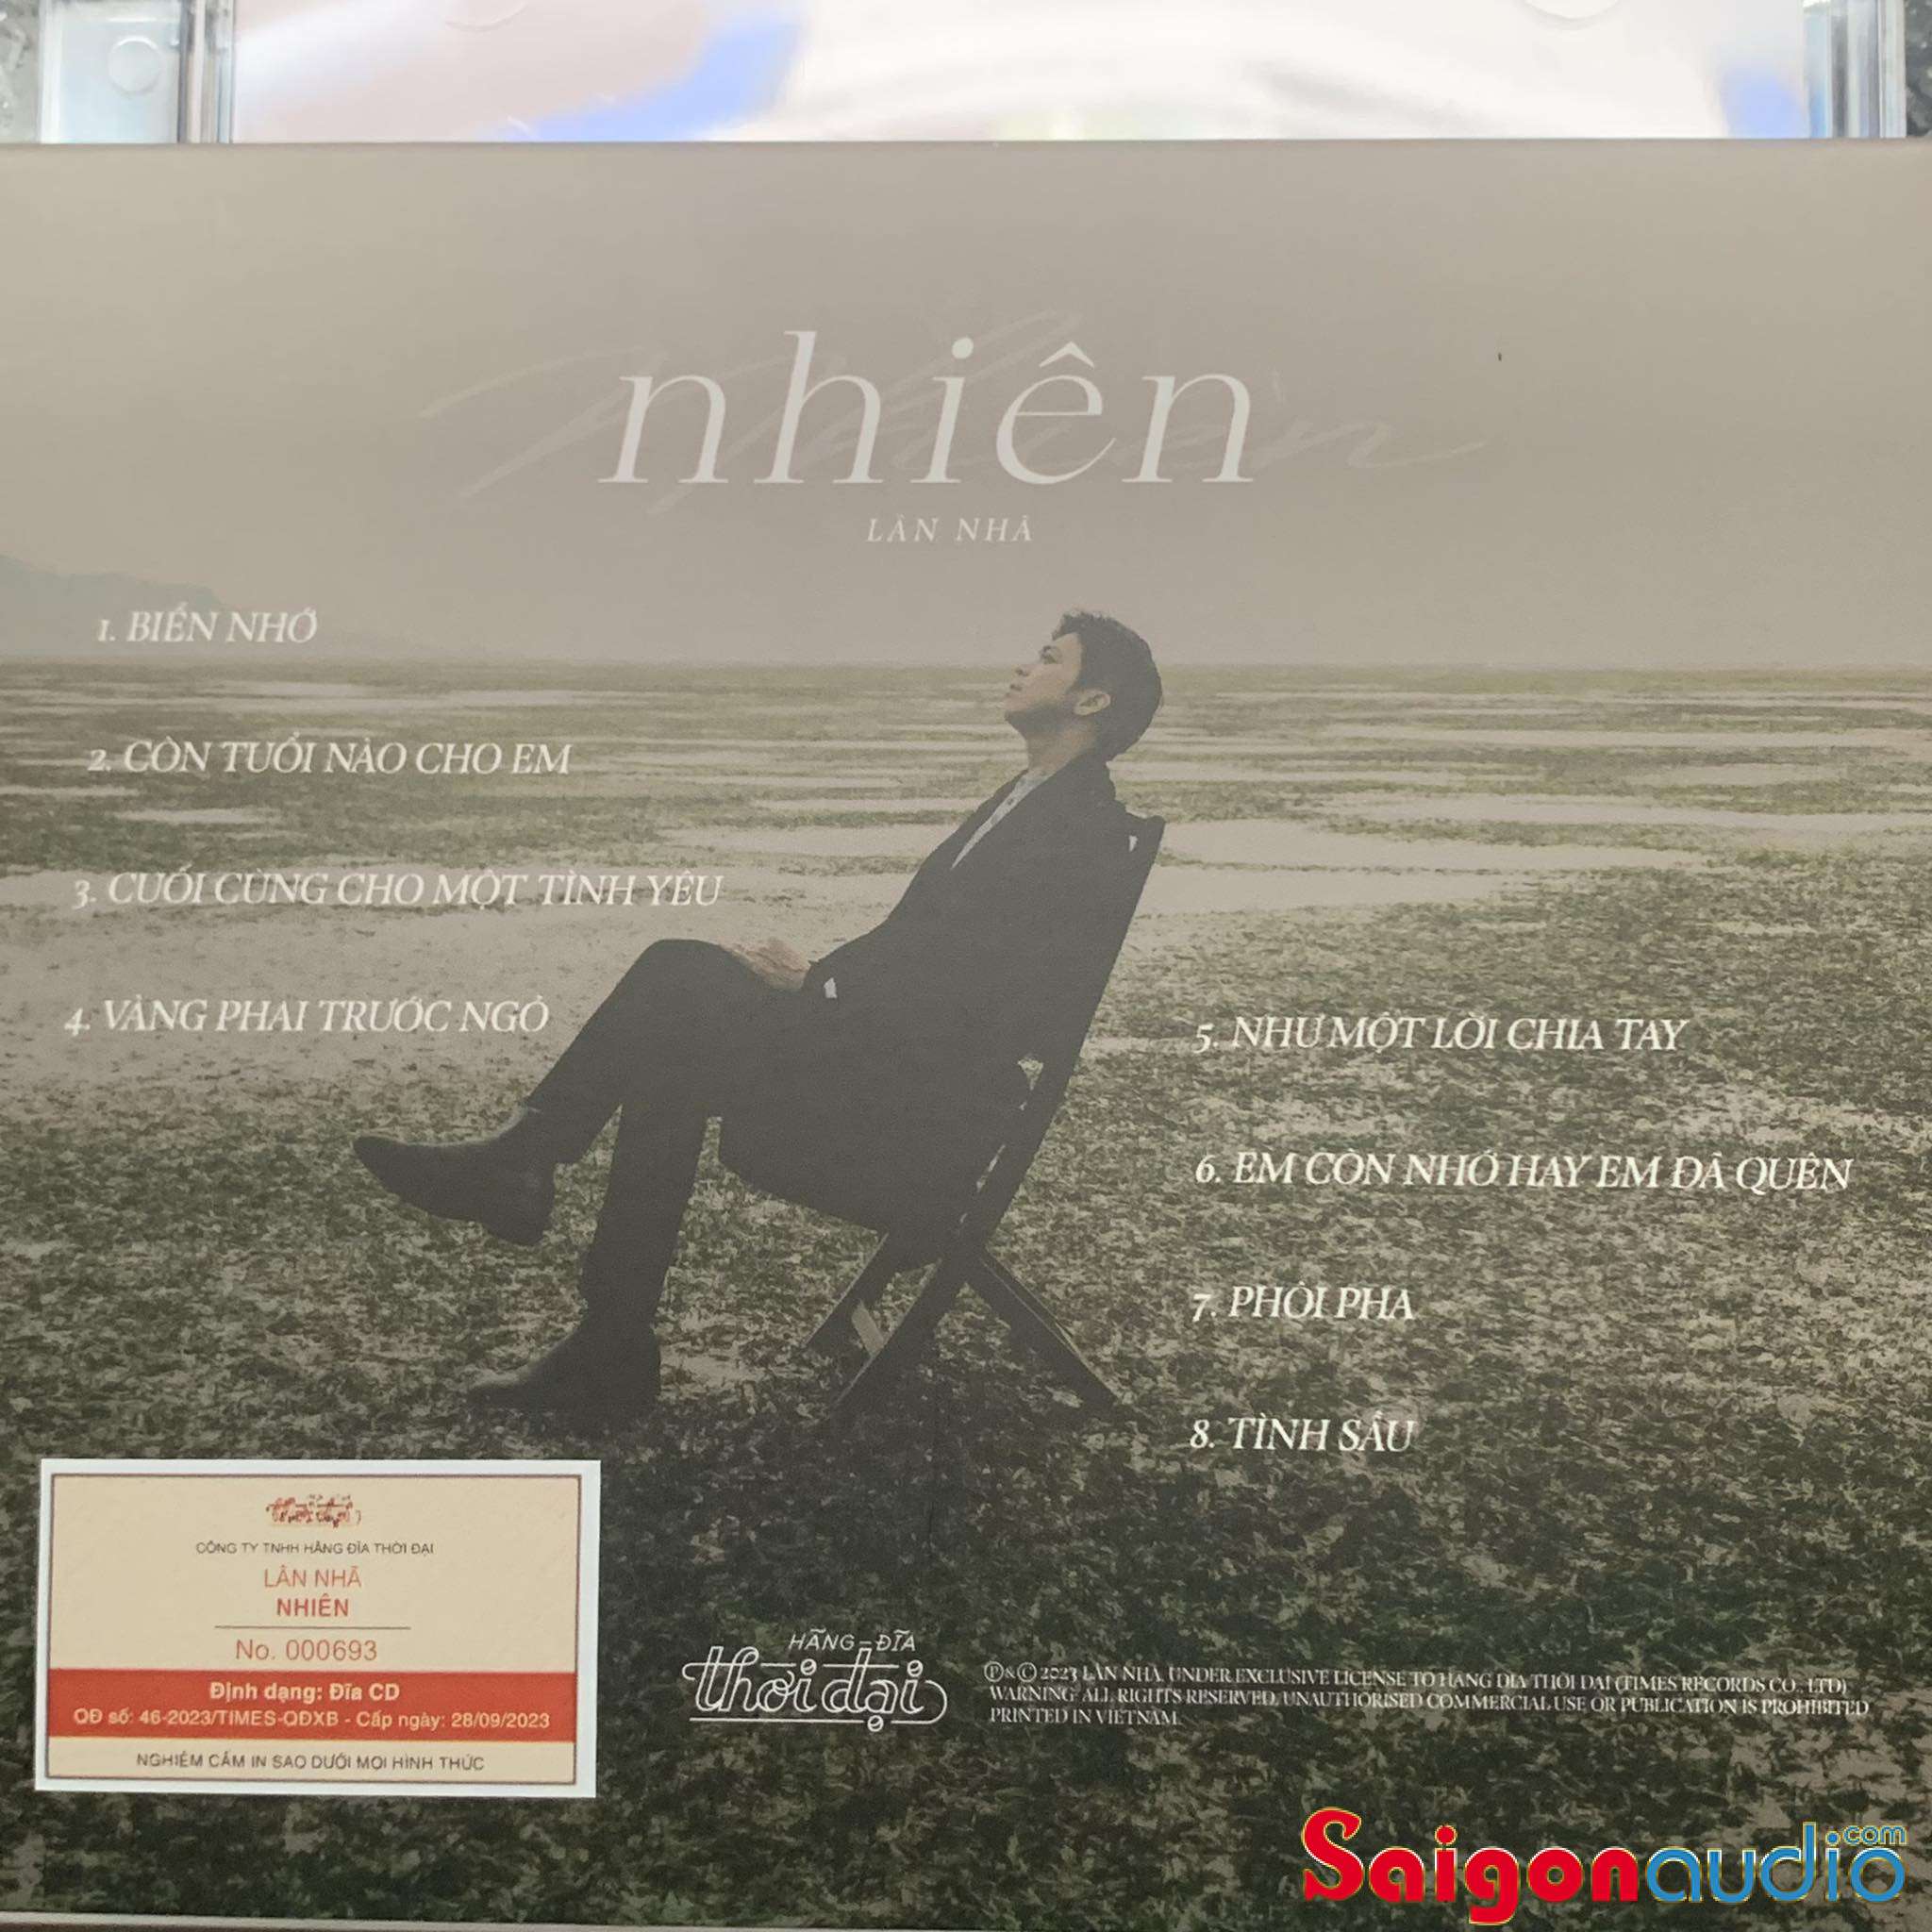 Đĩa CD nhạc gốc Lân Nhã - Nhiên - Tìm Bình Yên Với Nhạc Trịnh (Free ship khi mua 2 đĩa CD cùng hoặc khác loại)